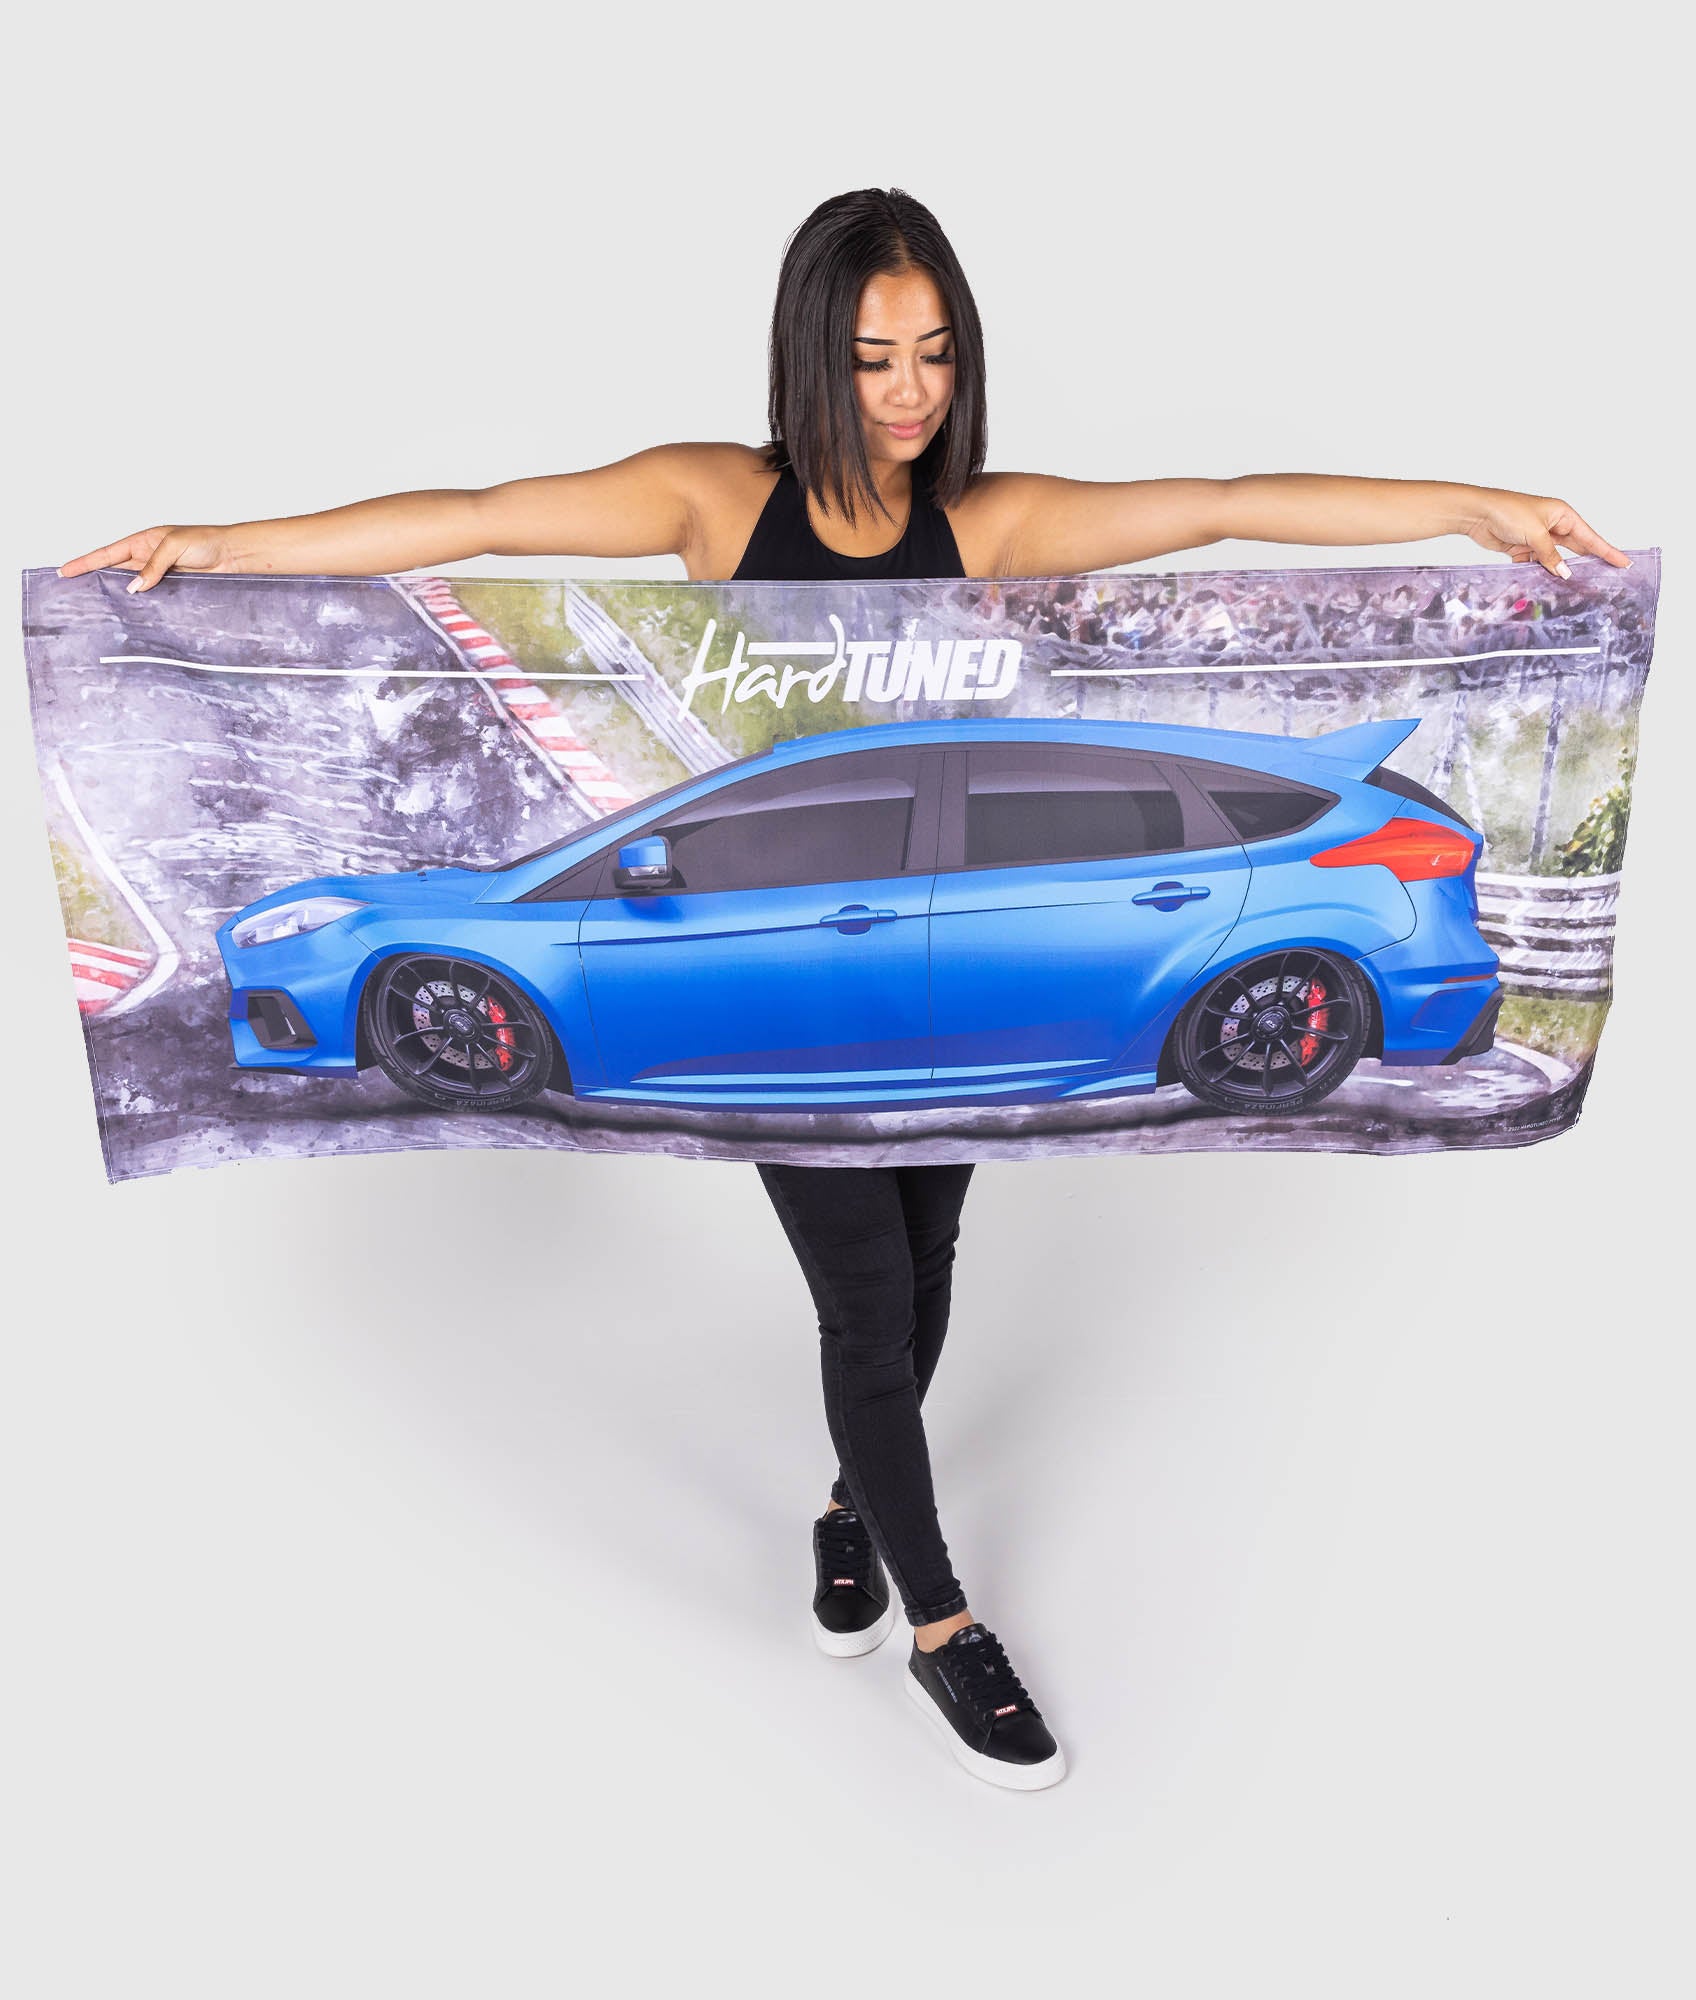 JDM Ford Focus RS 2016 Car Workshop Flag - Hardtuned